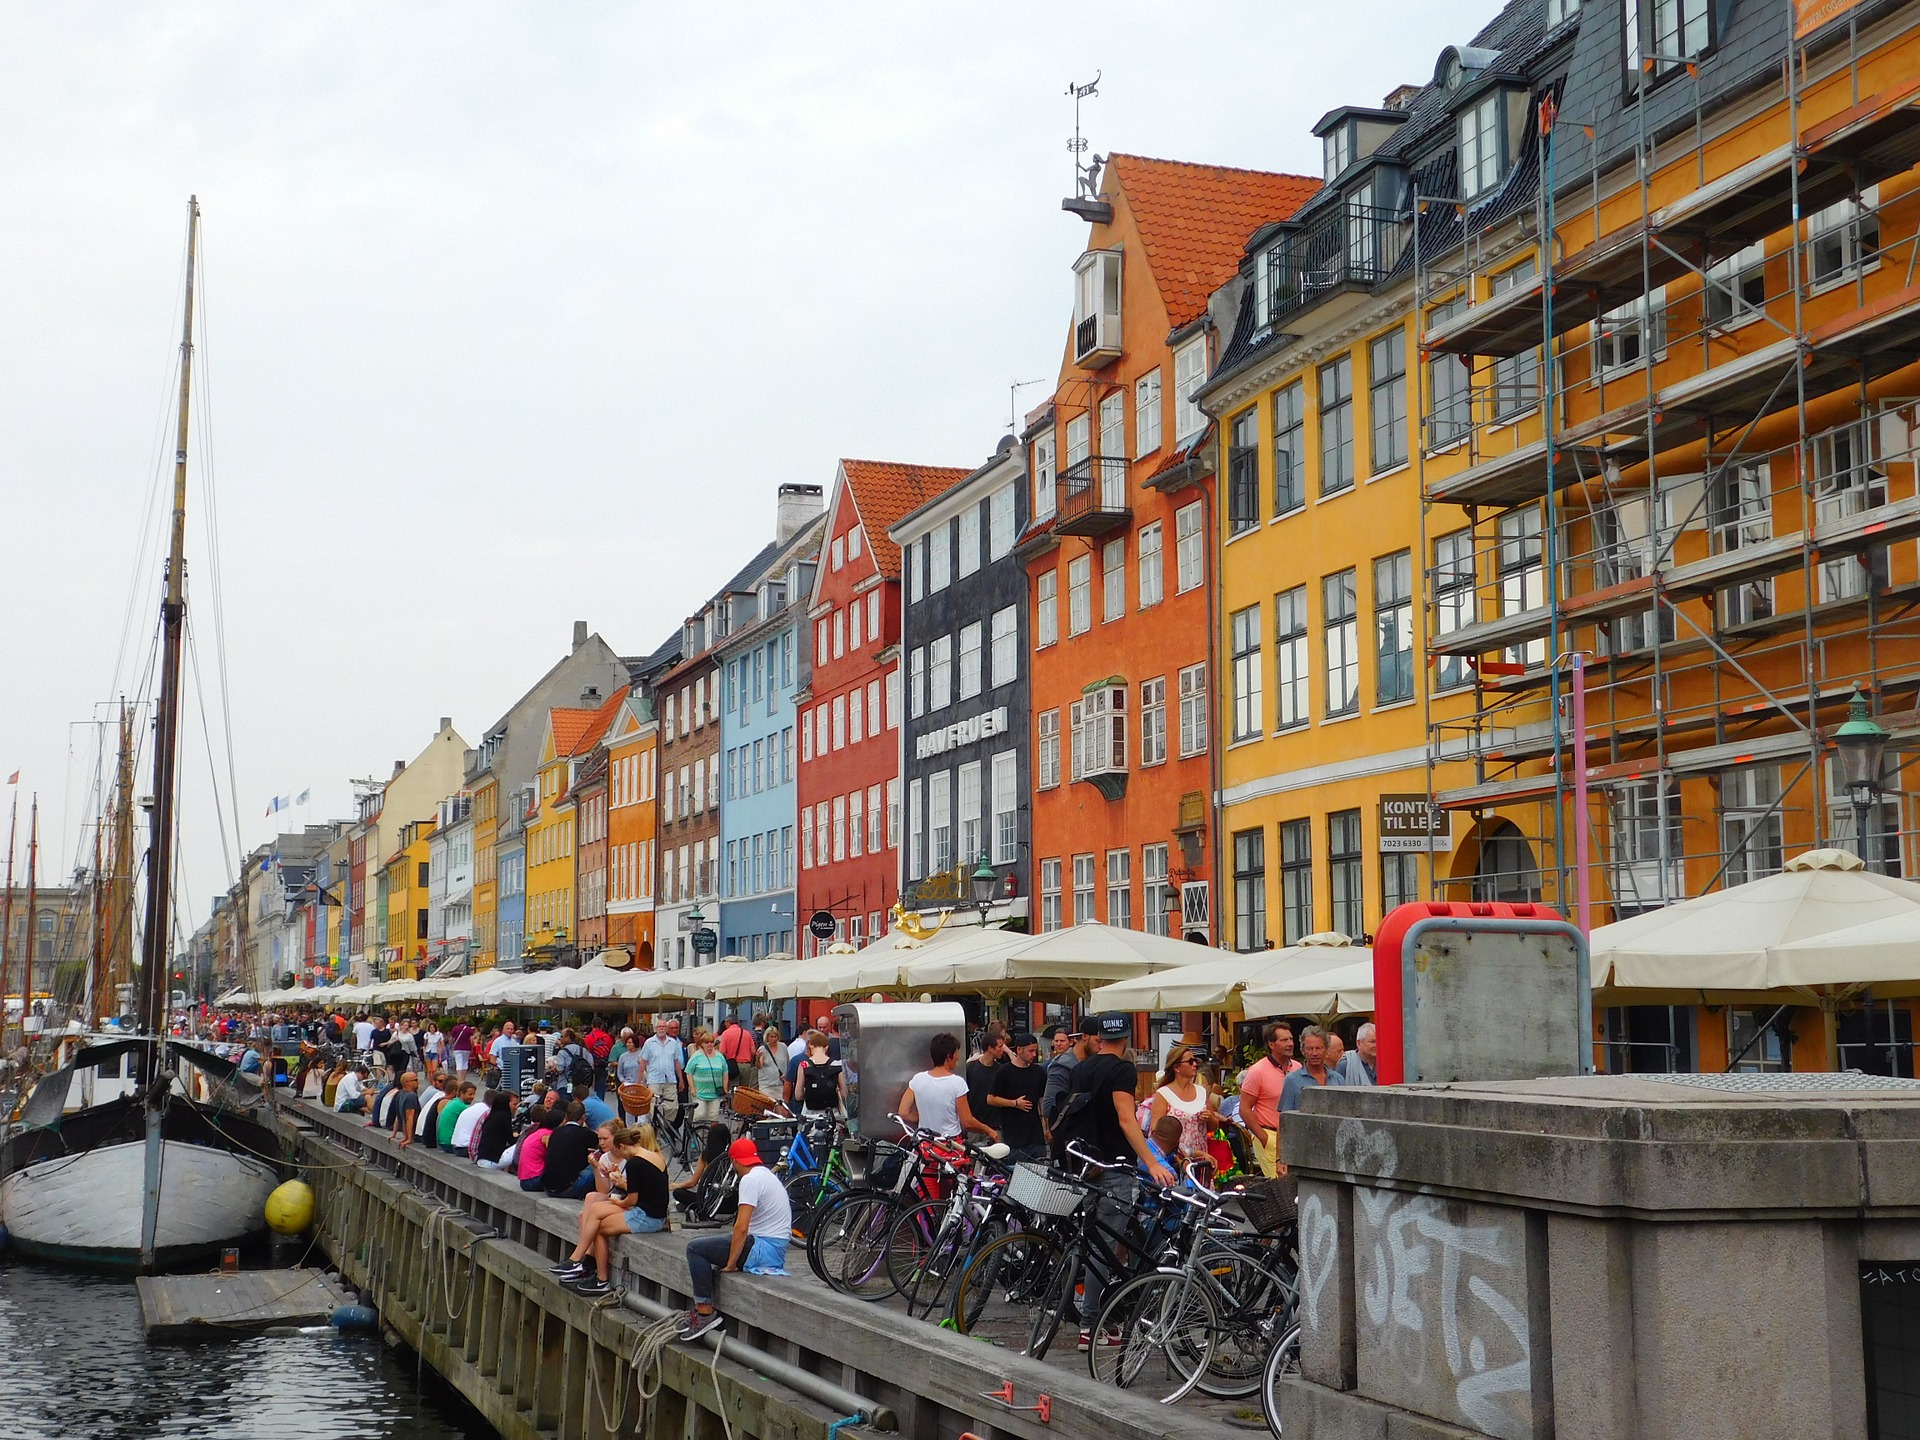 Eine Städte Reise nach Kopenhagen ist vor allem im Sommer besonders schön